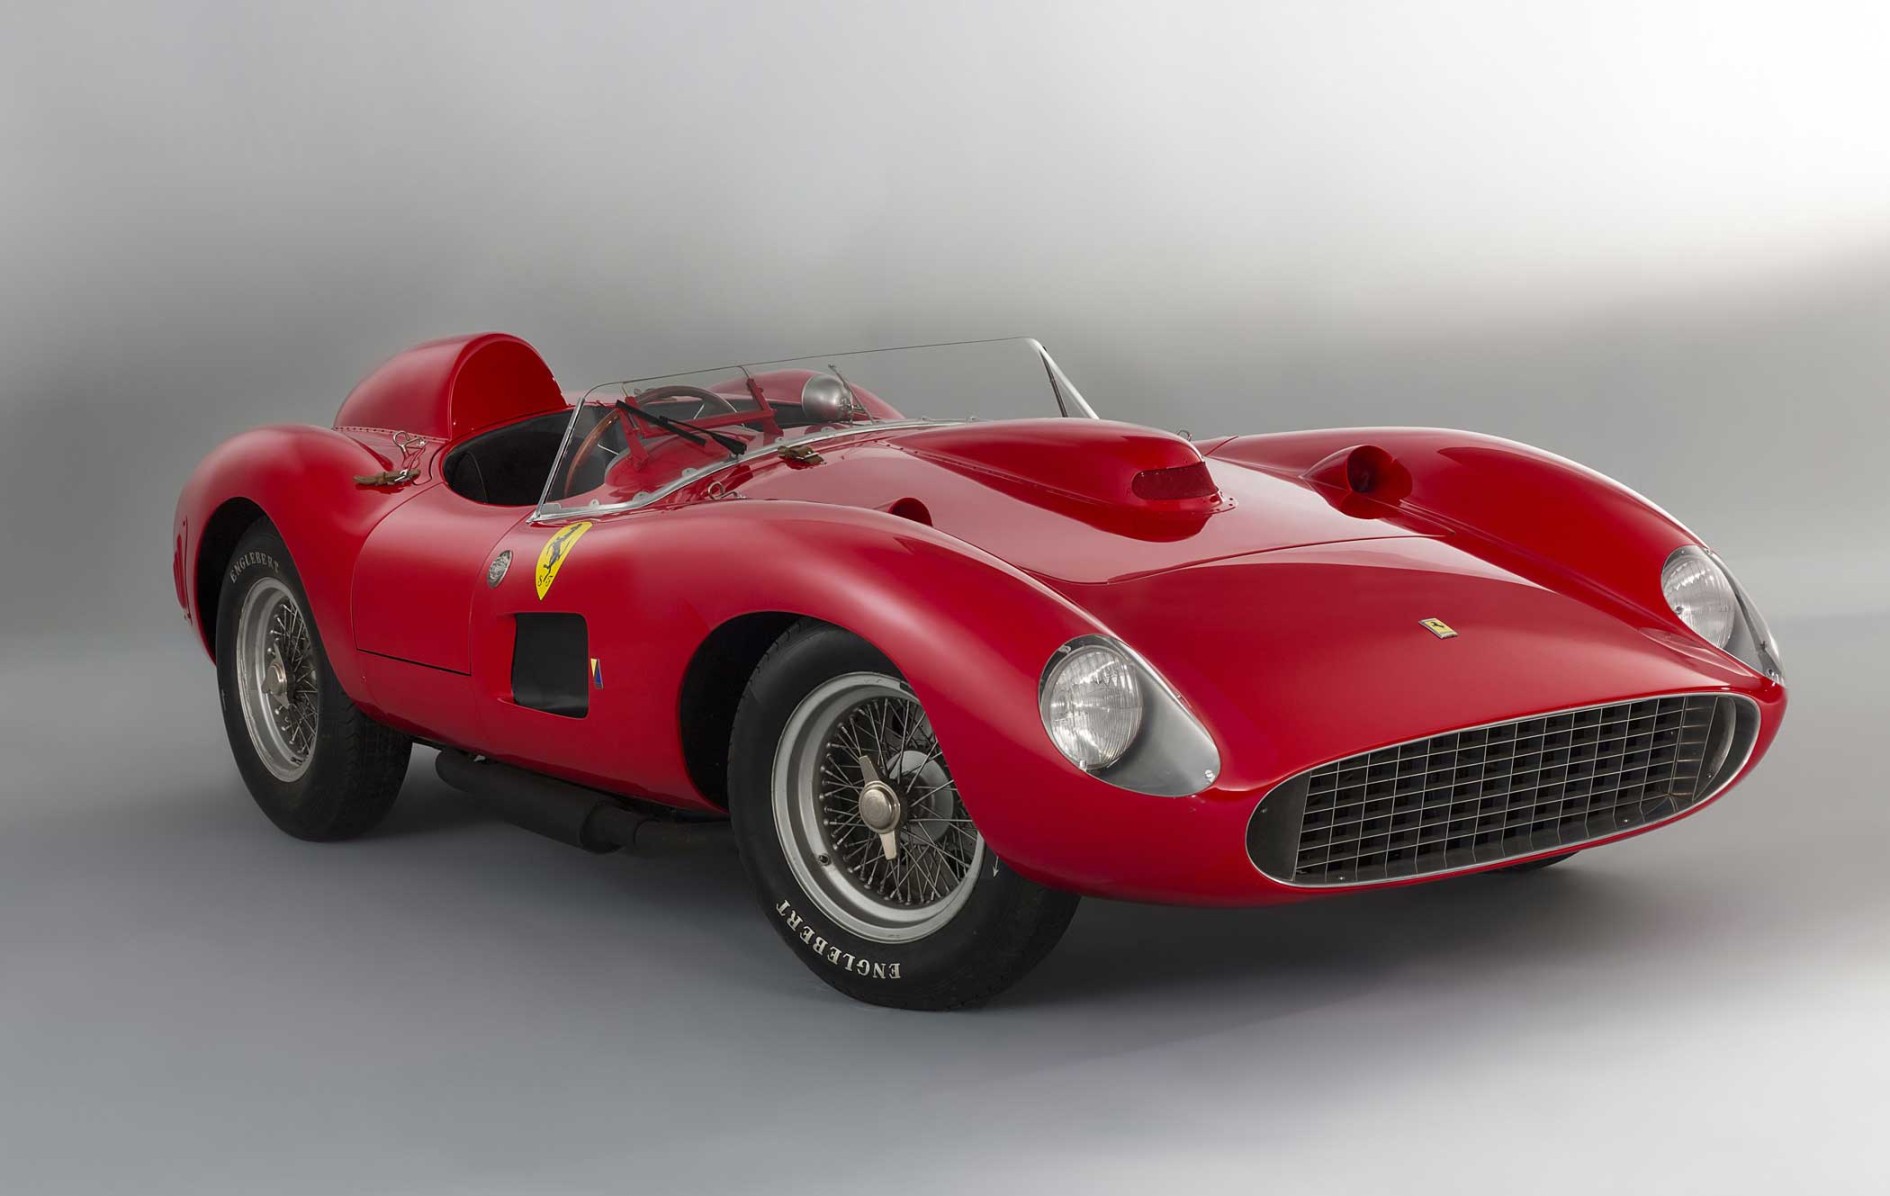 Ferrari  S Spider Scaglietti: The $ Million Car  TIME